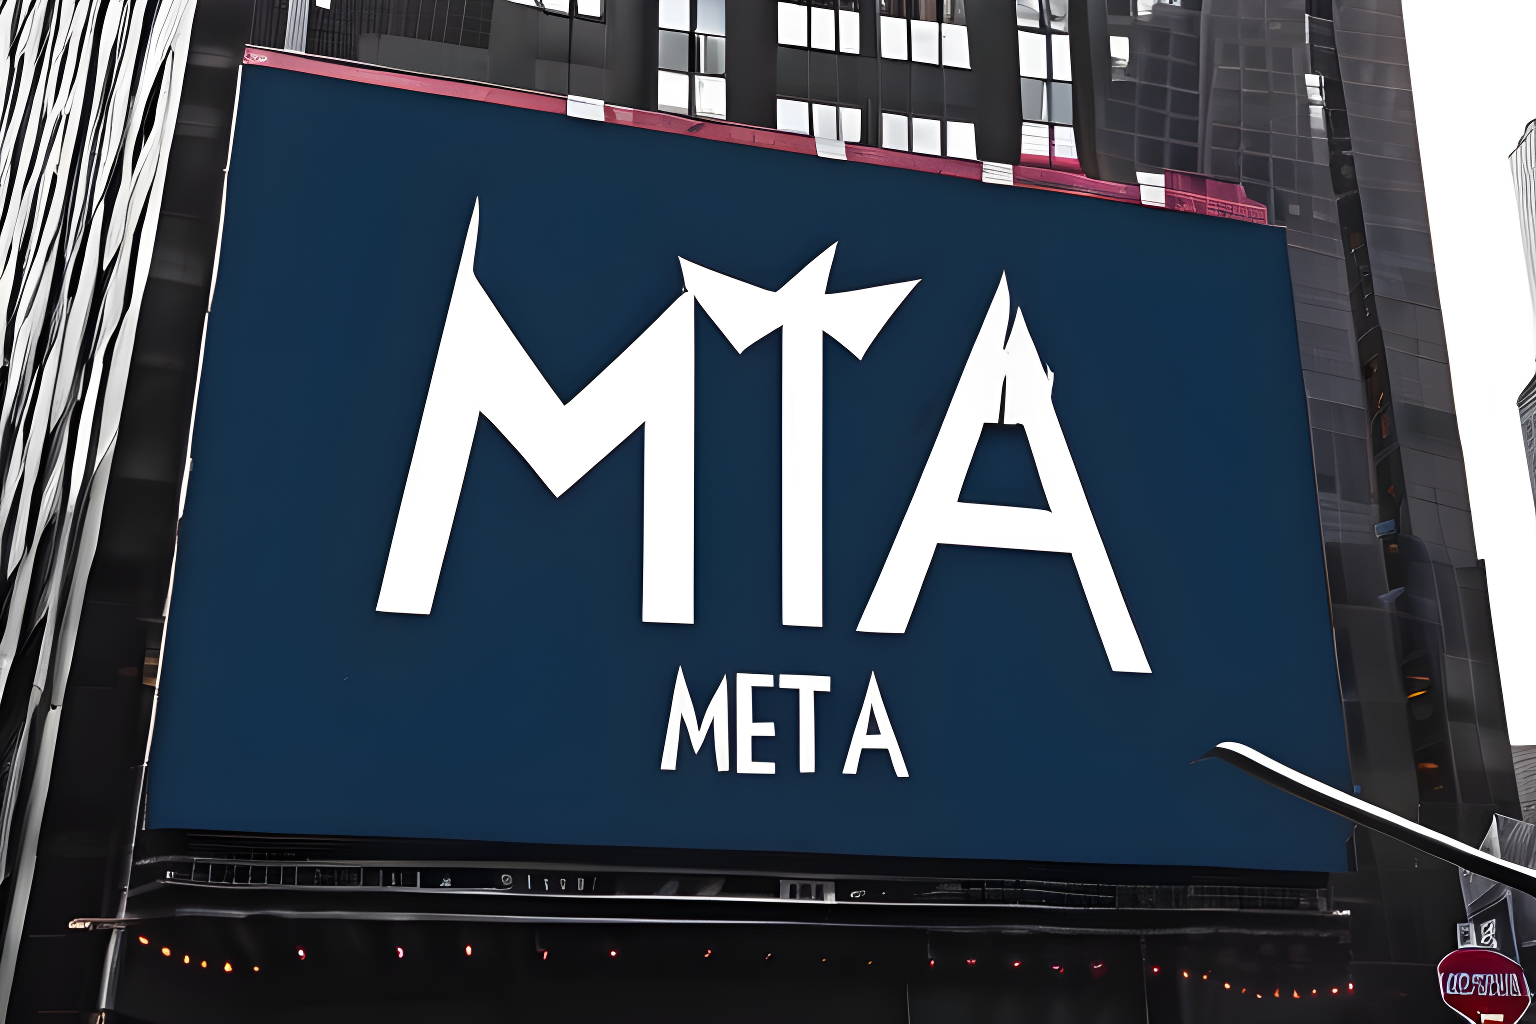 A billboard in new york displaying the meta logo